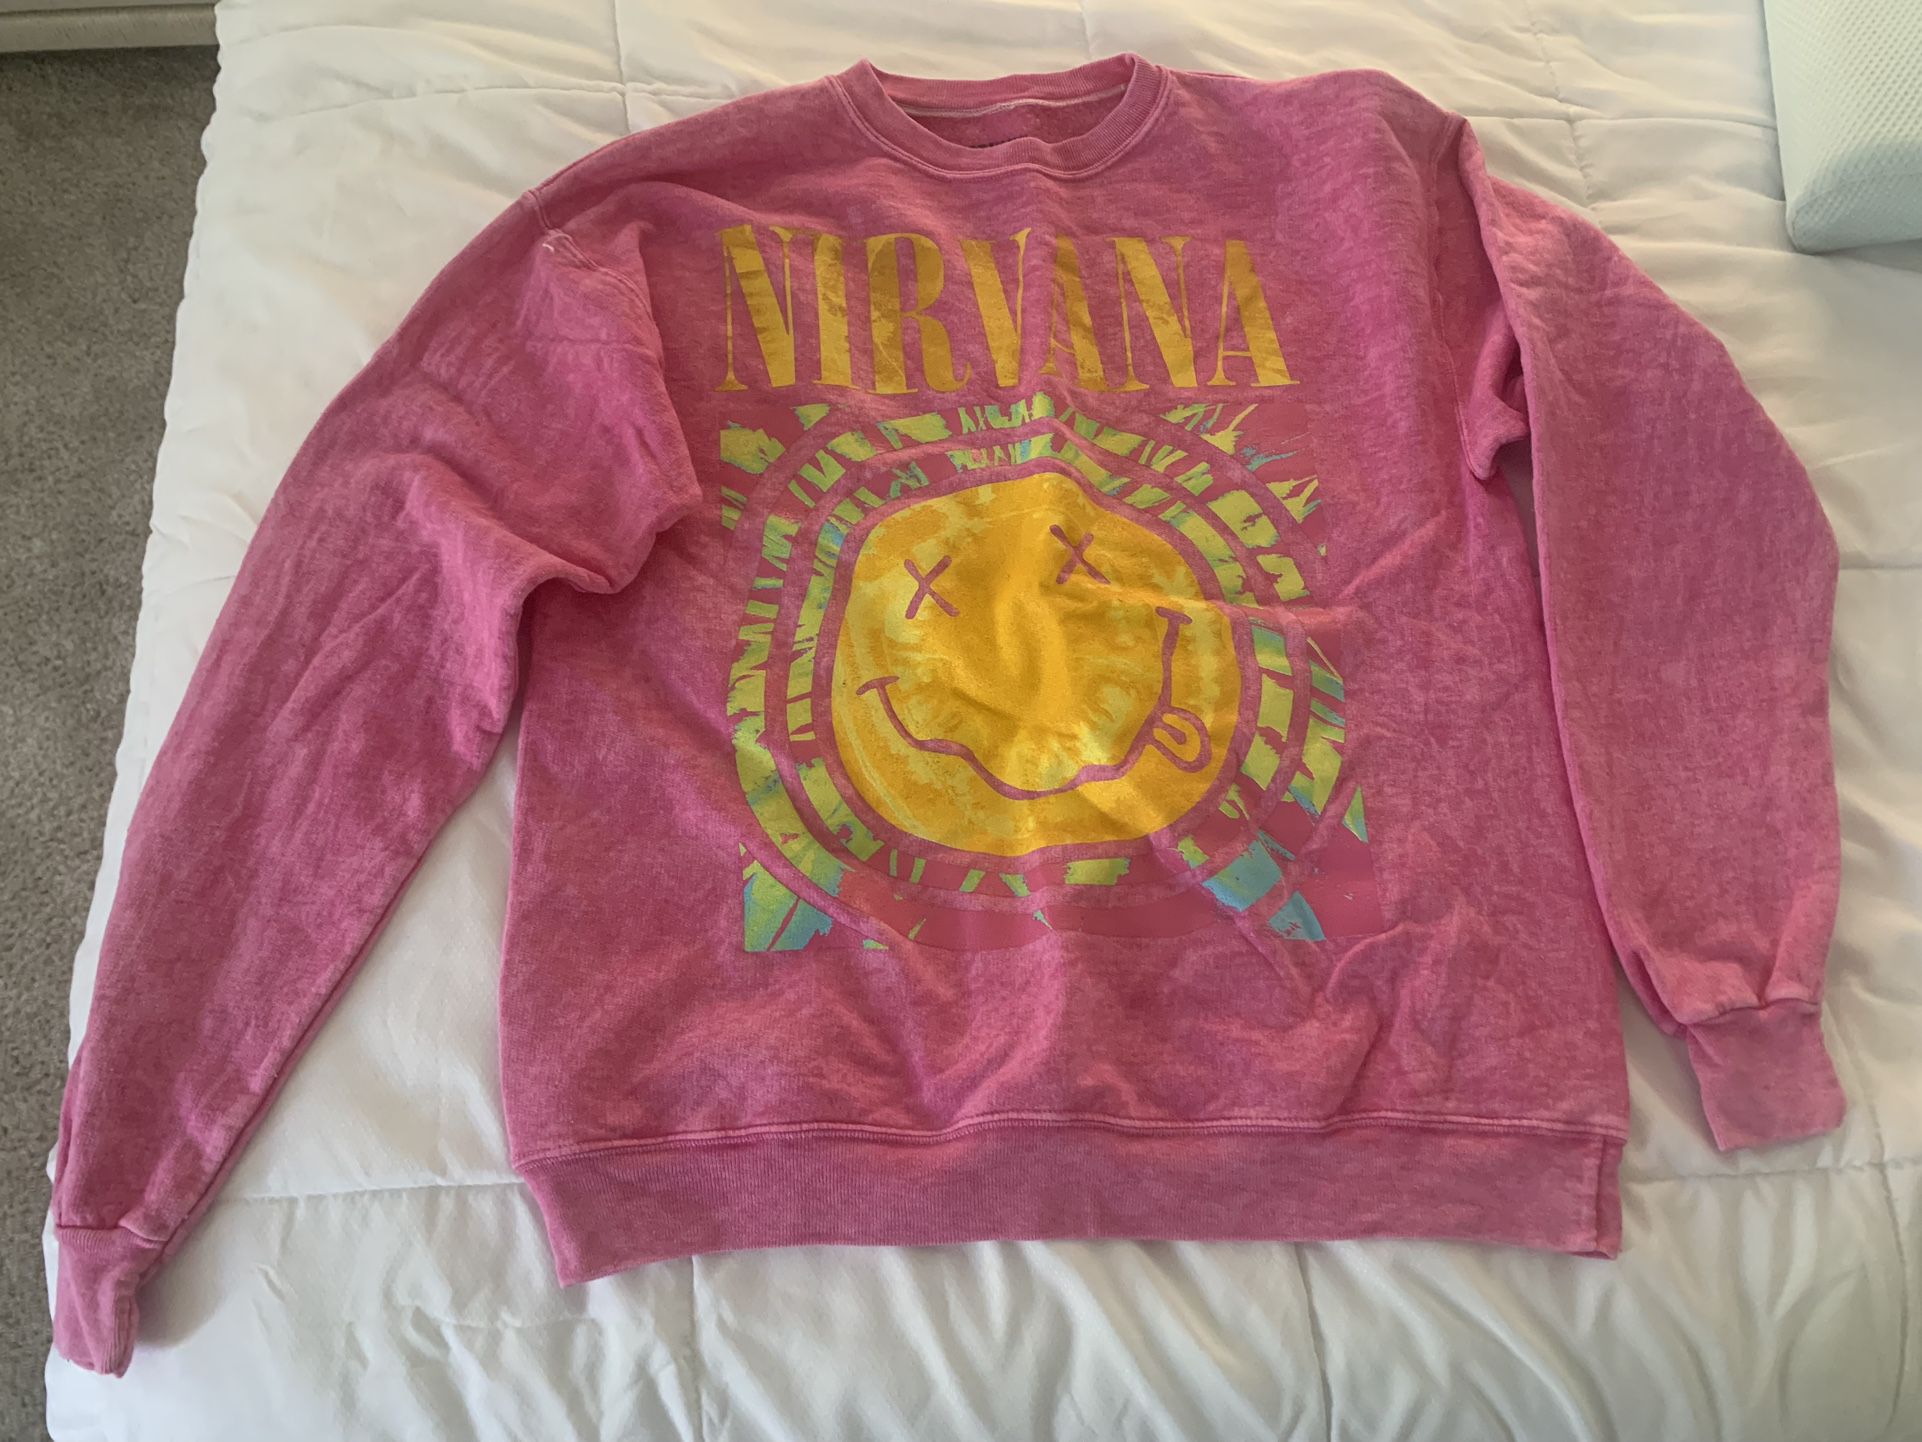 Nirvana Sweatshirt 